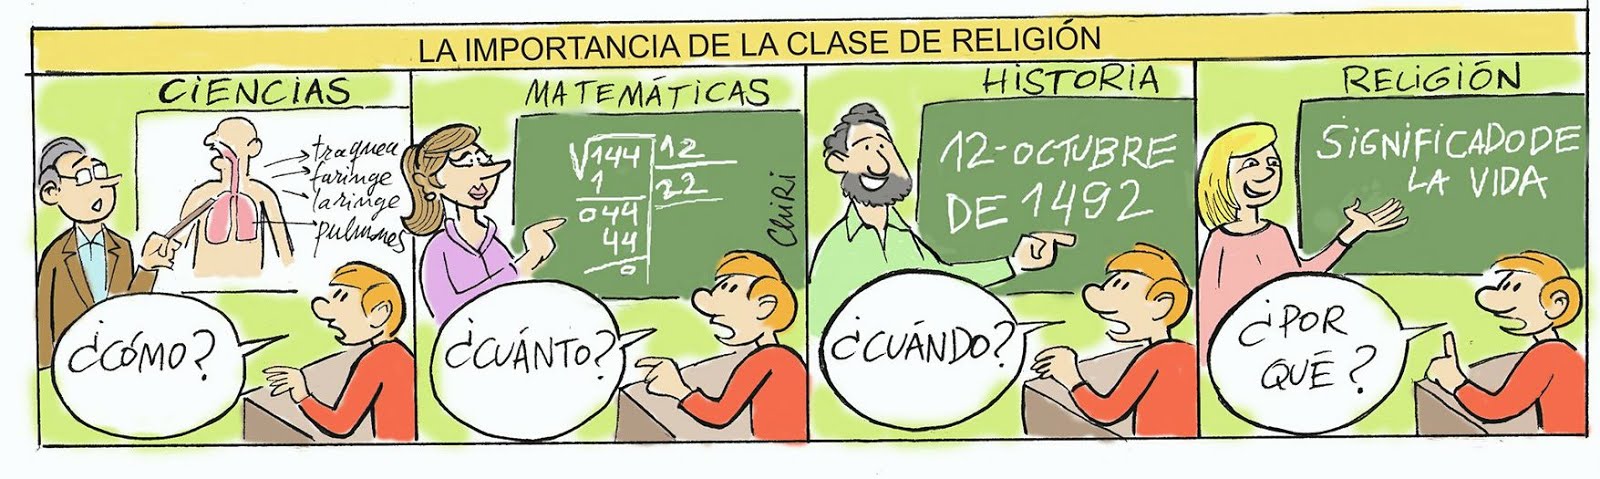 IMPORTANCIA DE LA CLASE DE RELIGIÓN